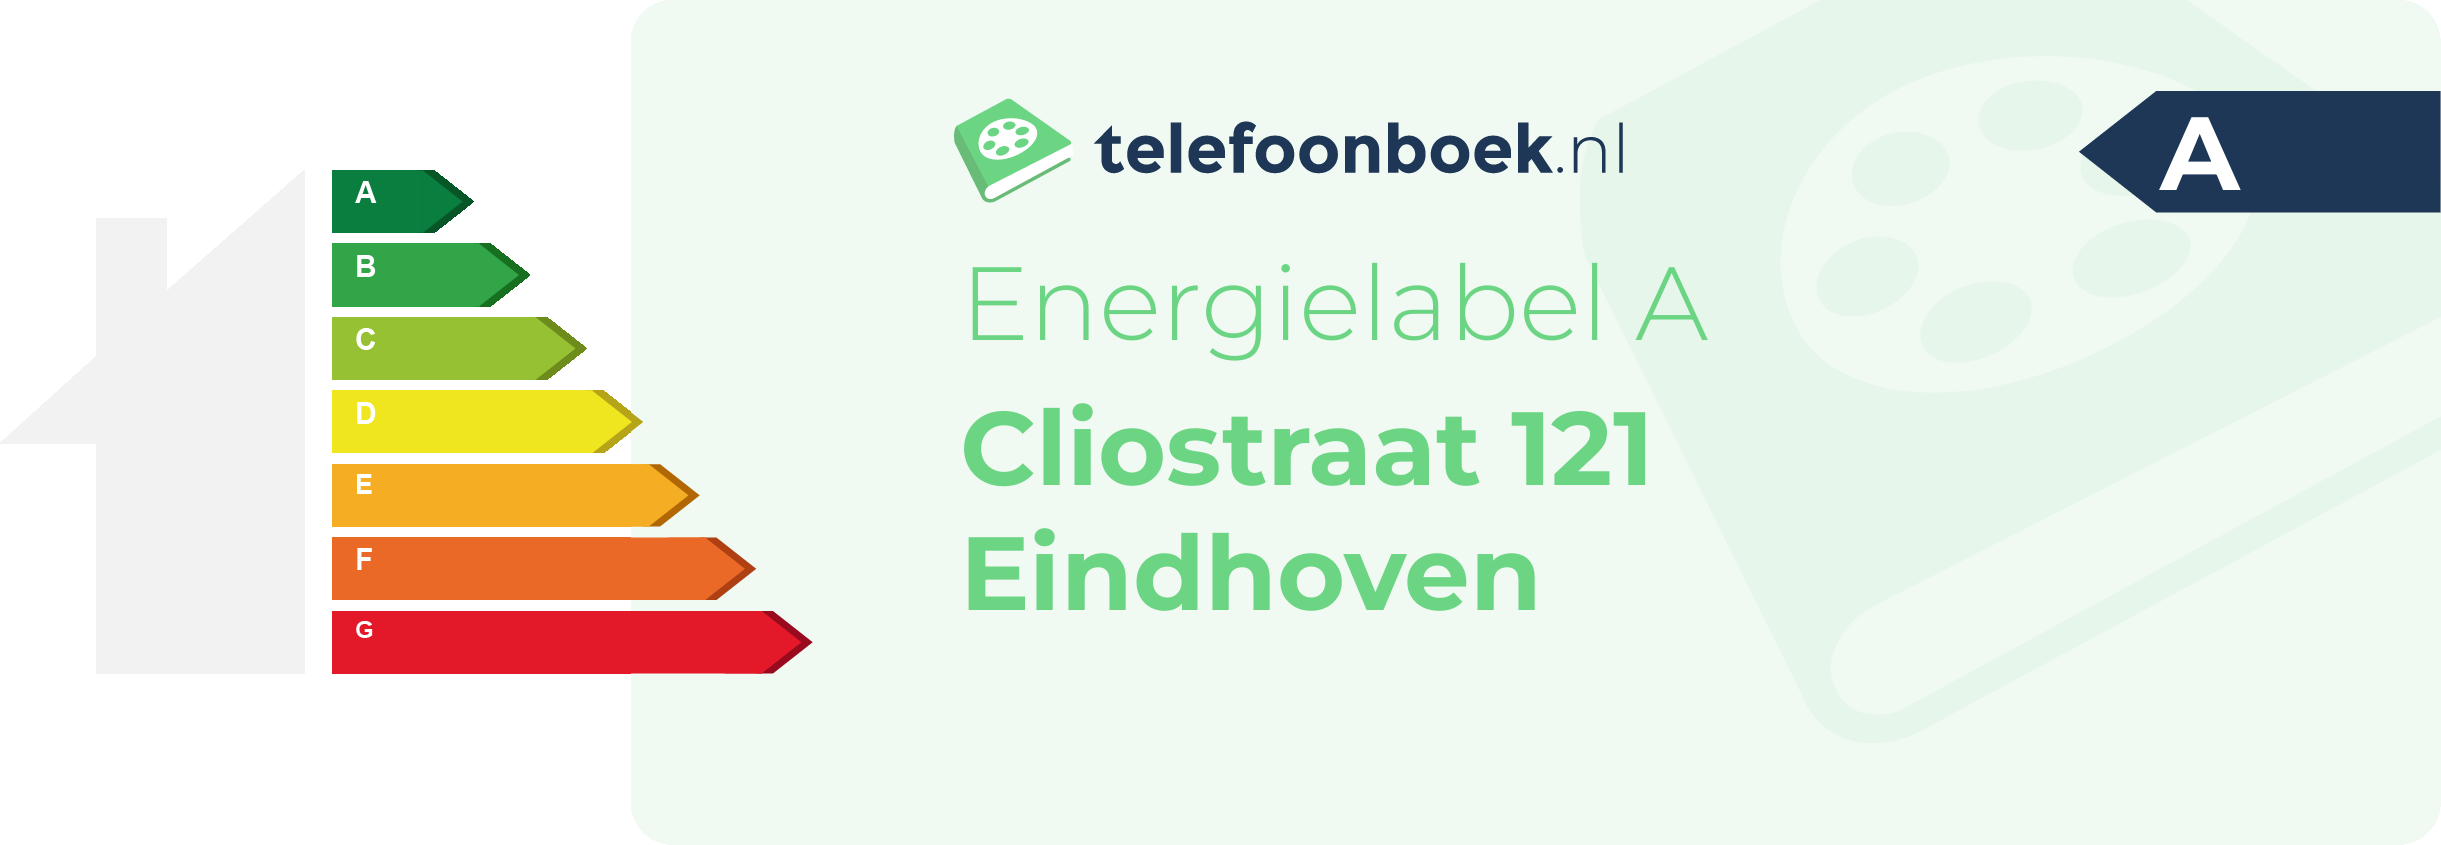 Energielabel Cliostraat 121 Eindhoven